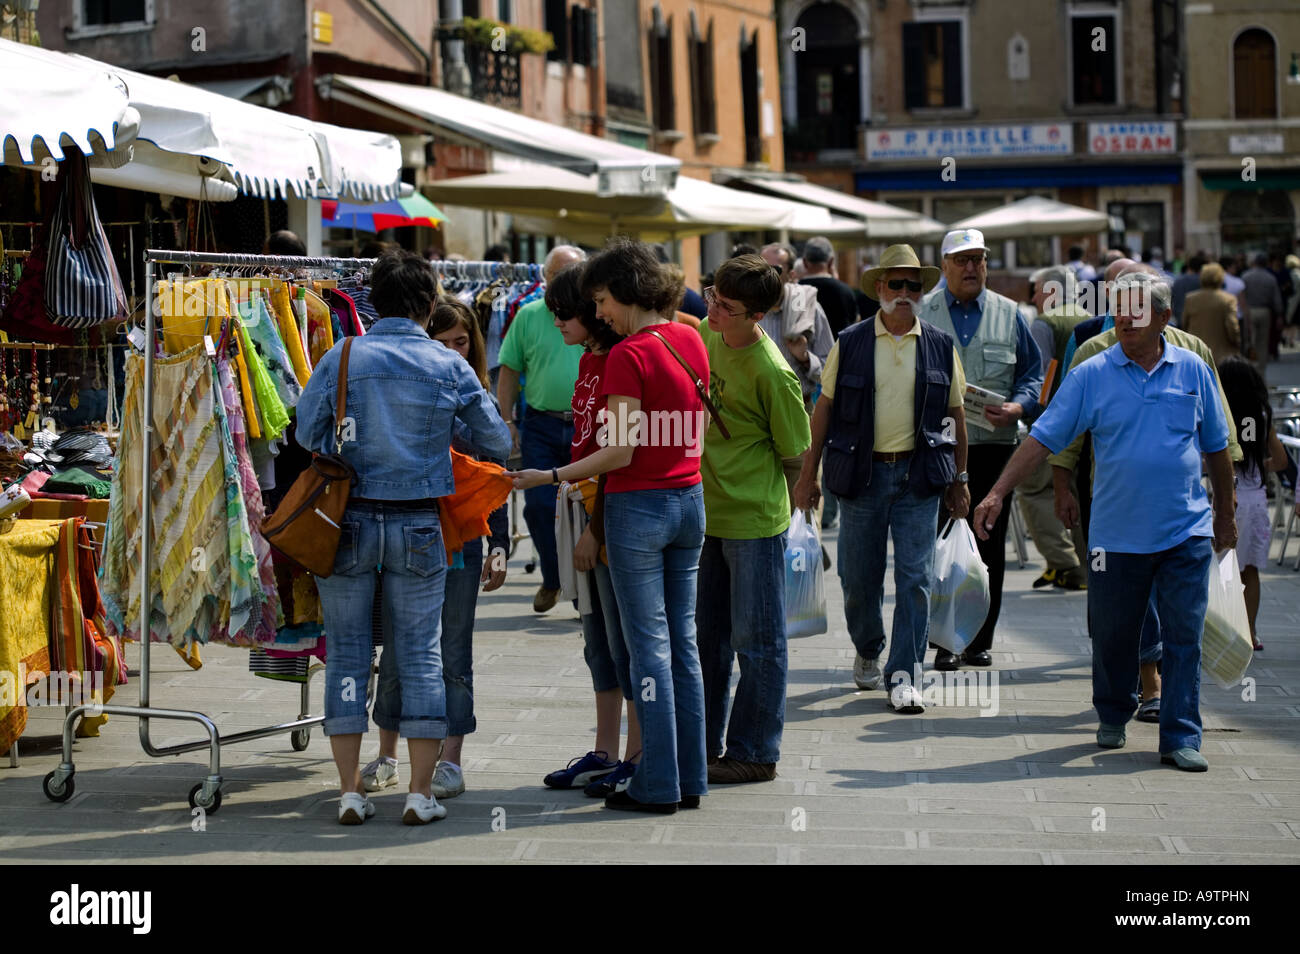 La gente local mirando ropa en un puesto en el mercado, Venecia Italia, Europa Foto de stock